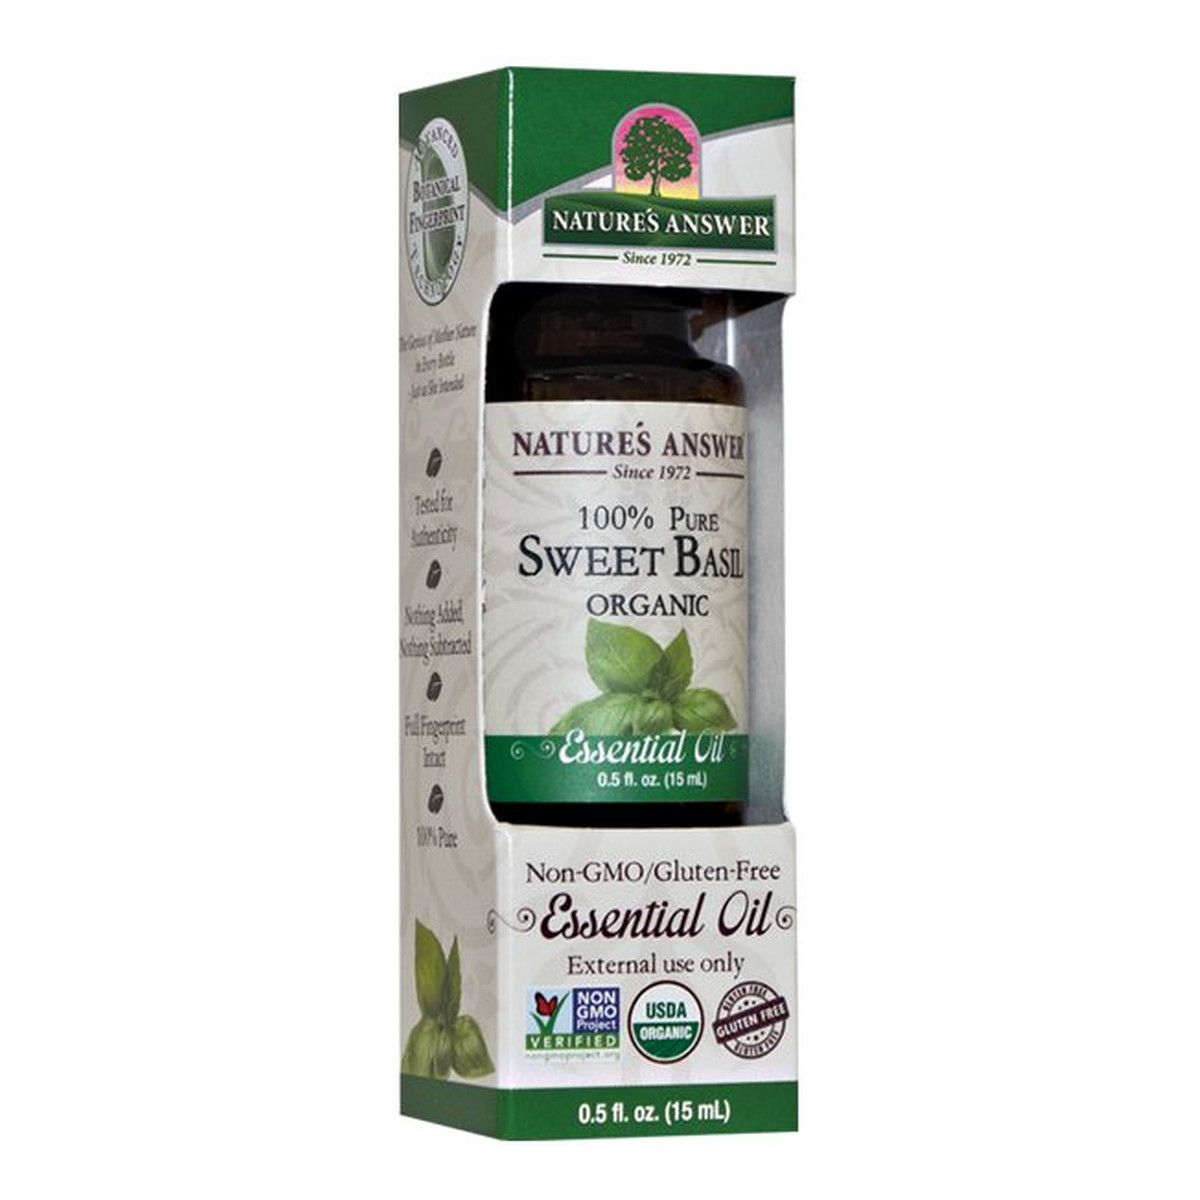 Nature's Answer 100% Pure Organic Essential Oil Sweet Basil organiczny olejek ze słodkiej bazylii 15ml